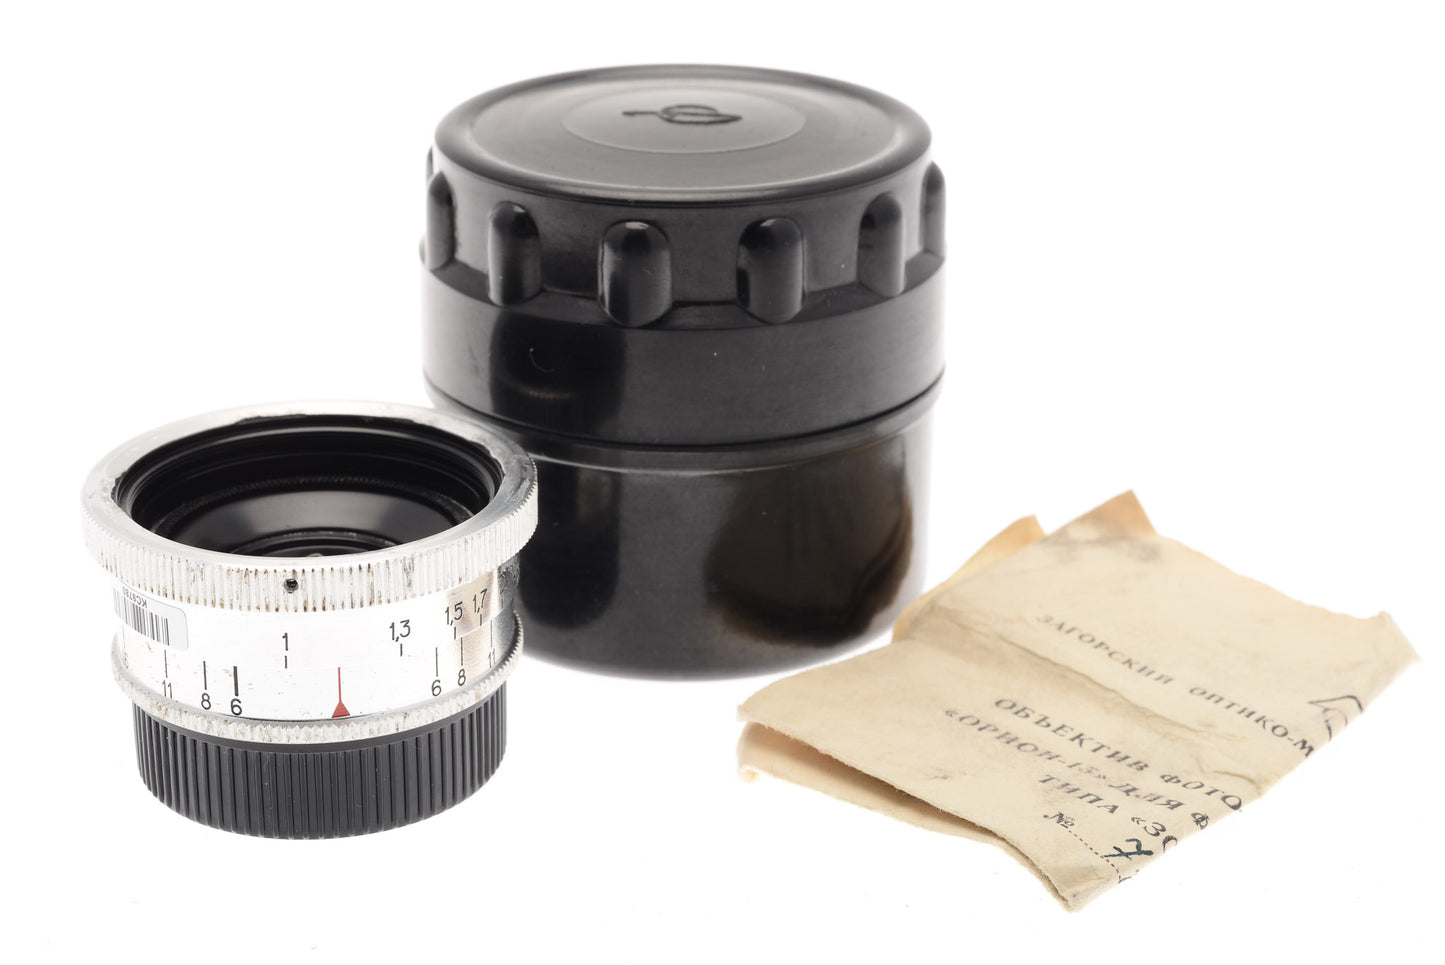 KMZ 28mm f6 Orion-15 - Lens